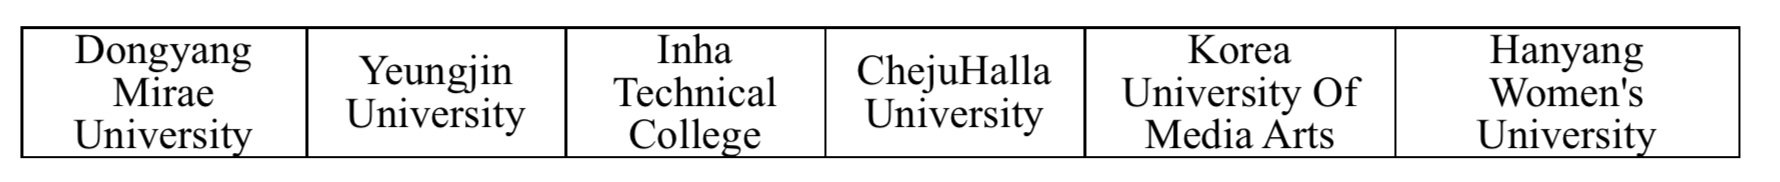 รายชื่อมหาวิทยาลัยในเกาหลี ที่สมัครทุนรัฐบาลได้